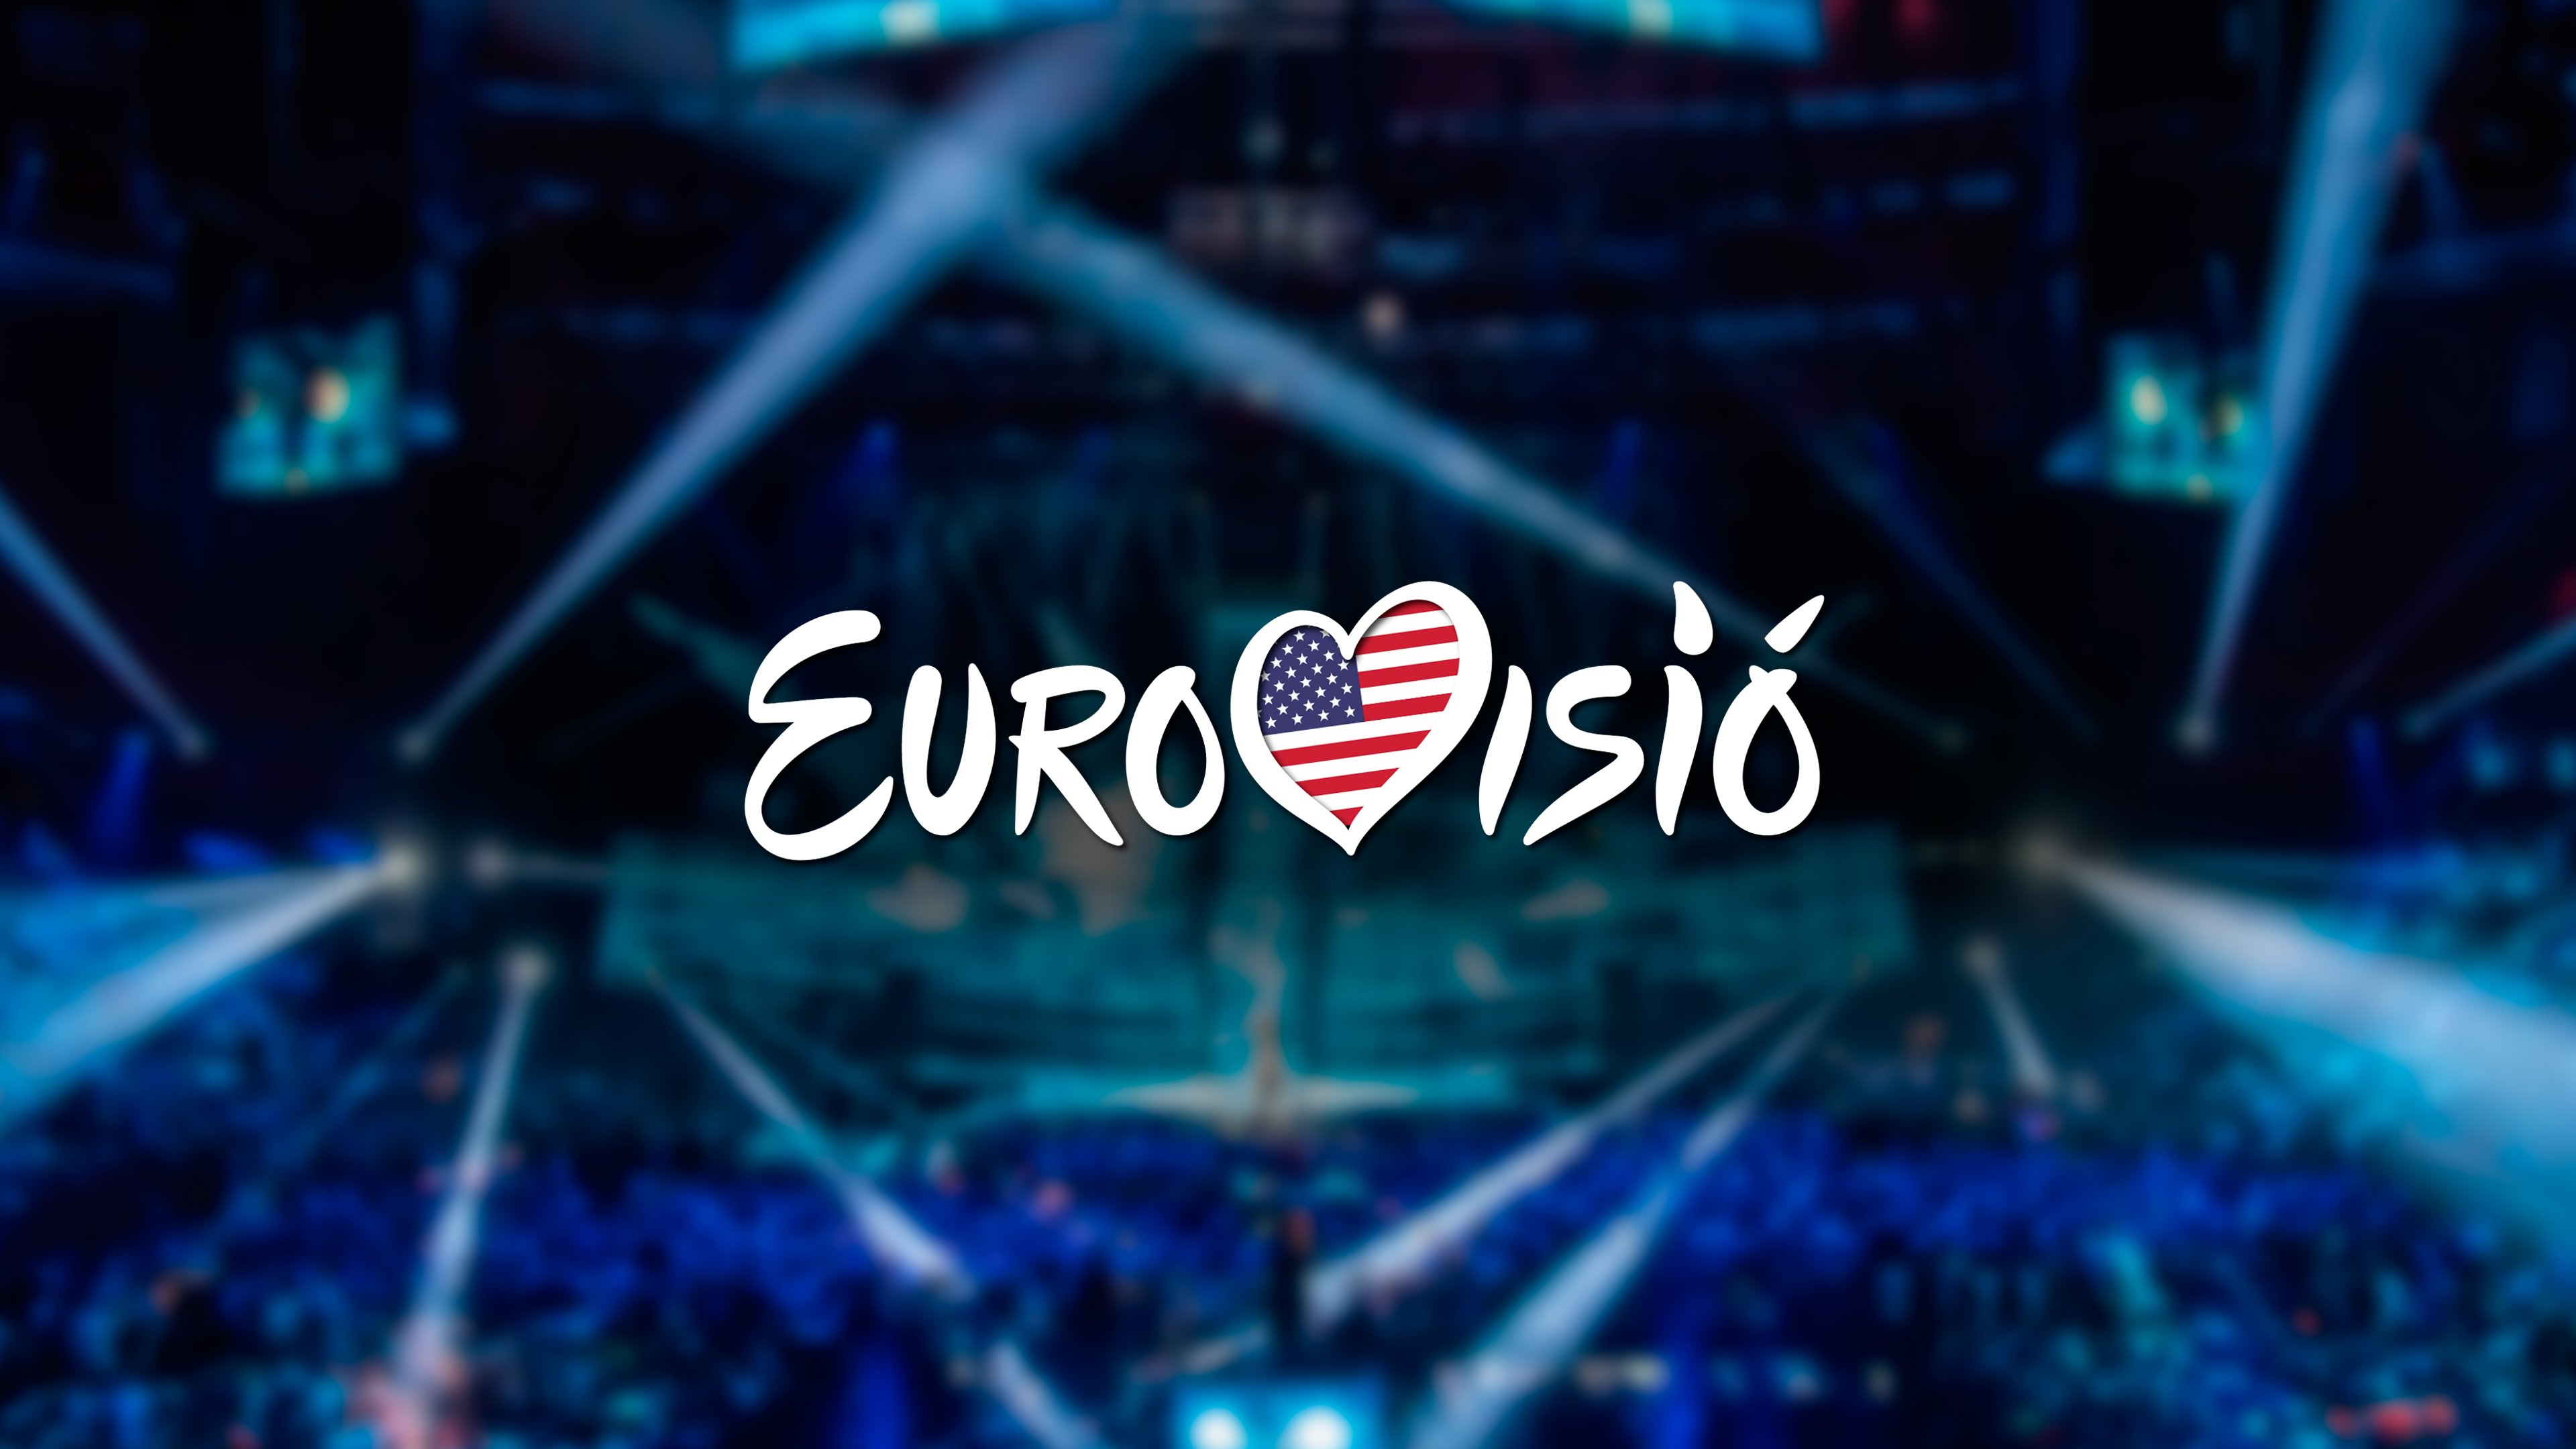 Estados Unidos tendrá su propio Eurovisión en el 2021